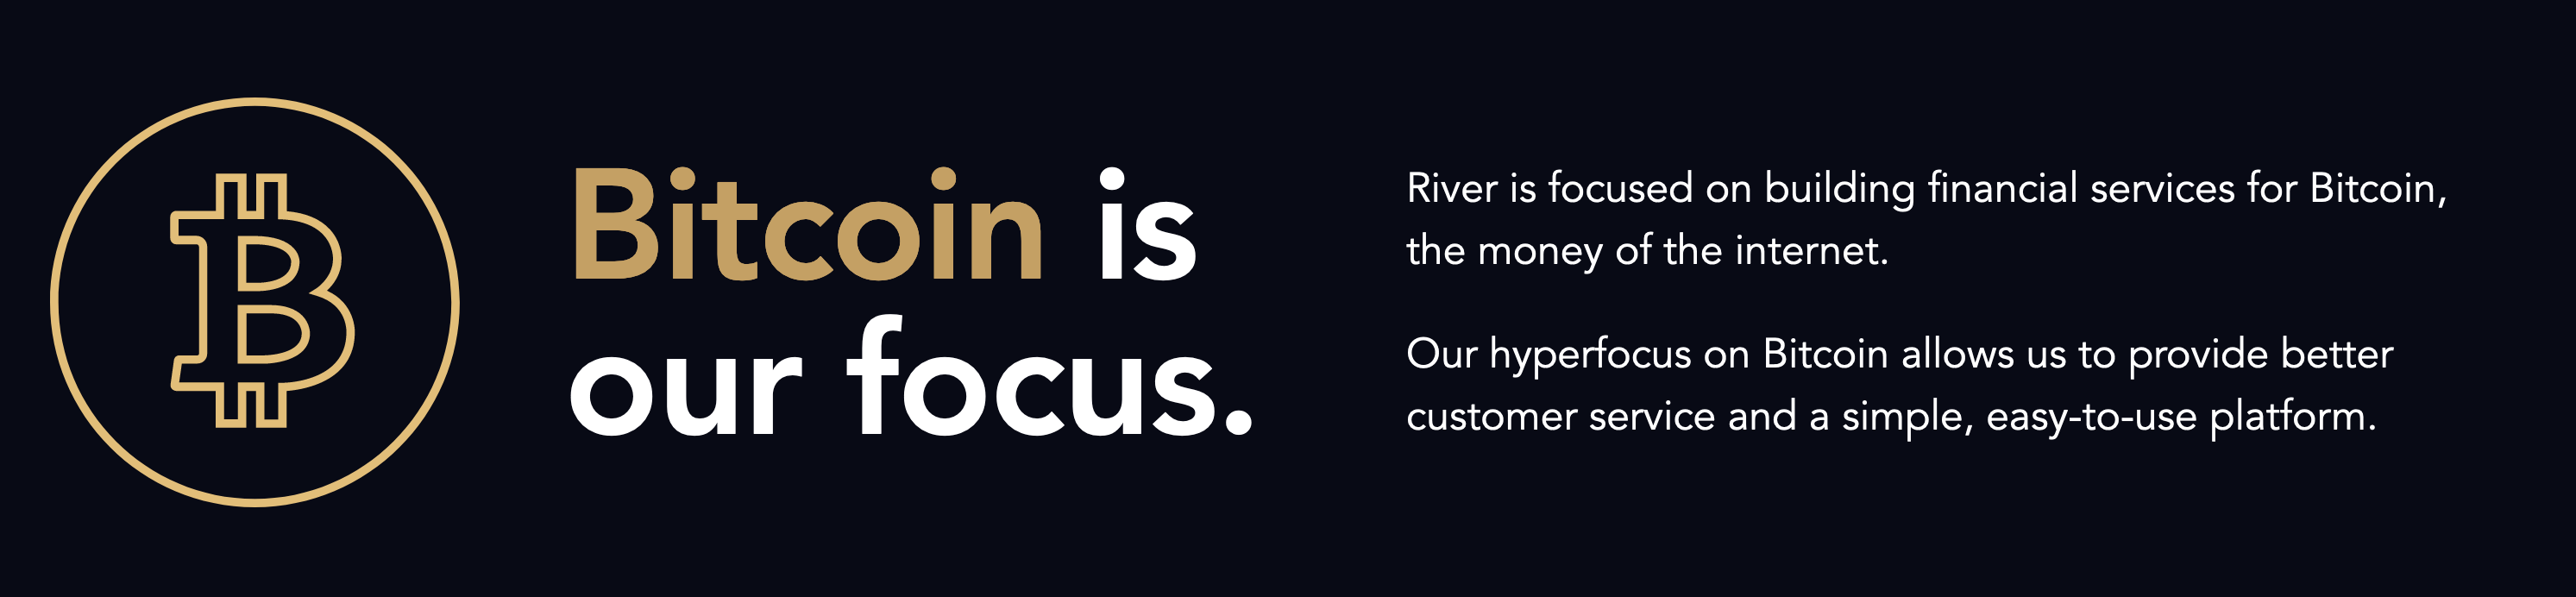 river.com